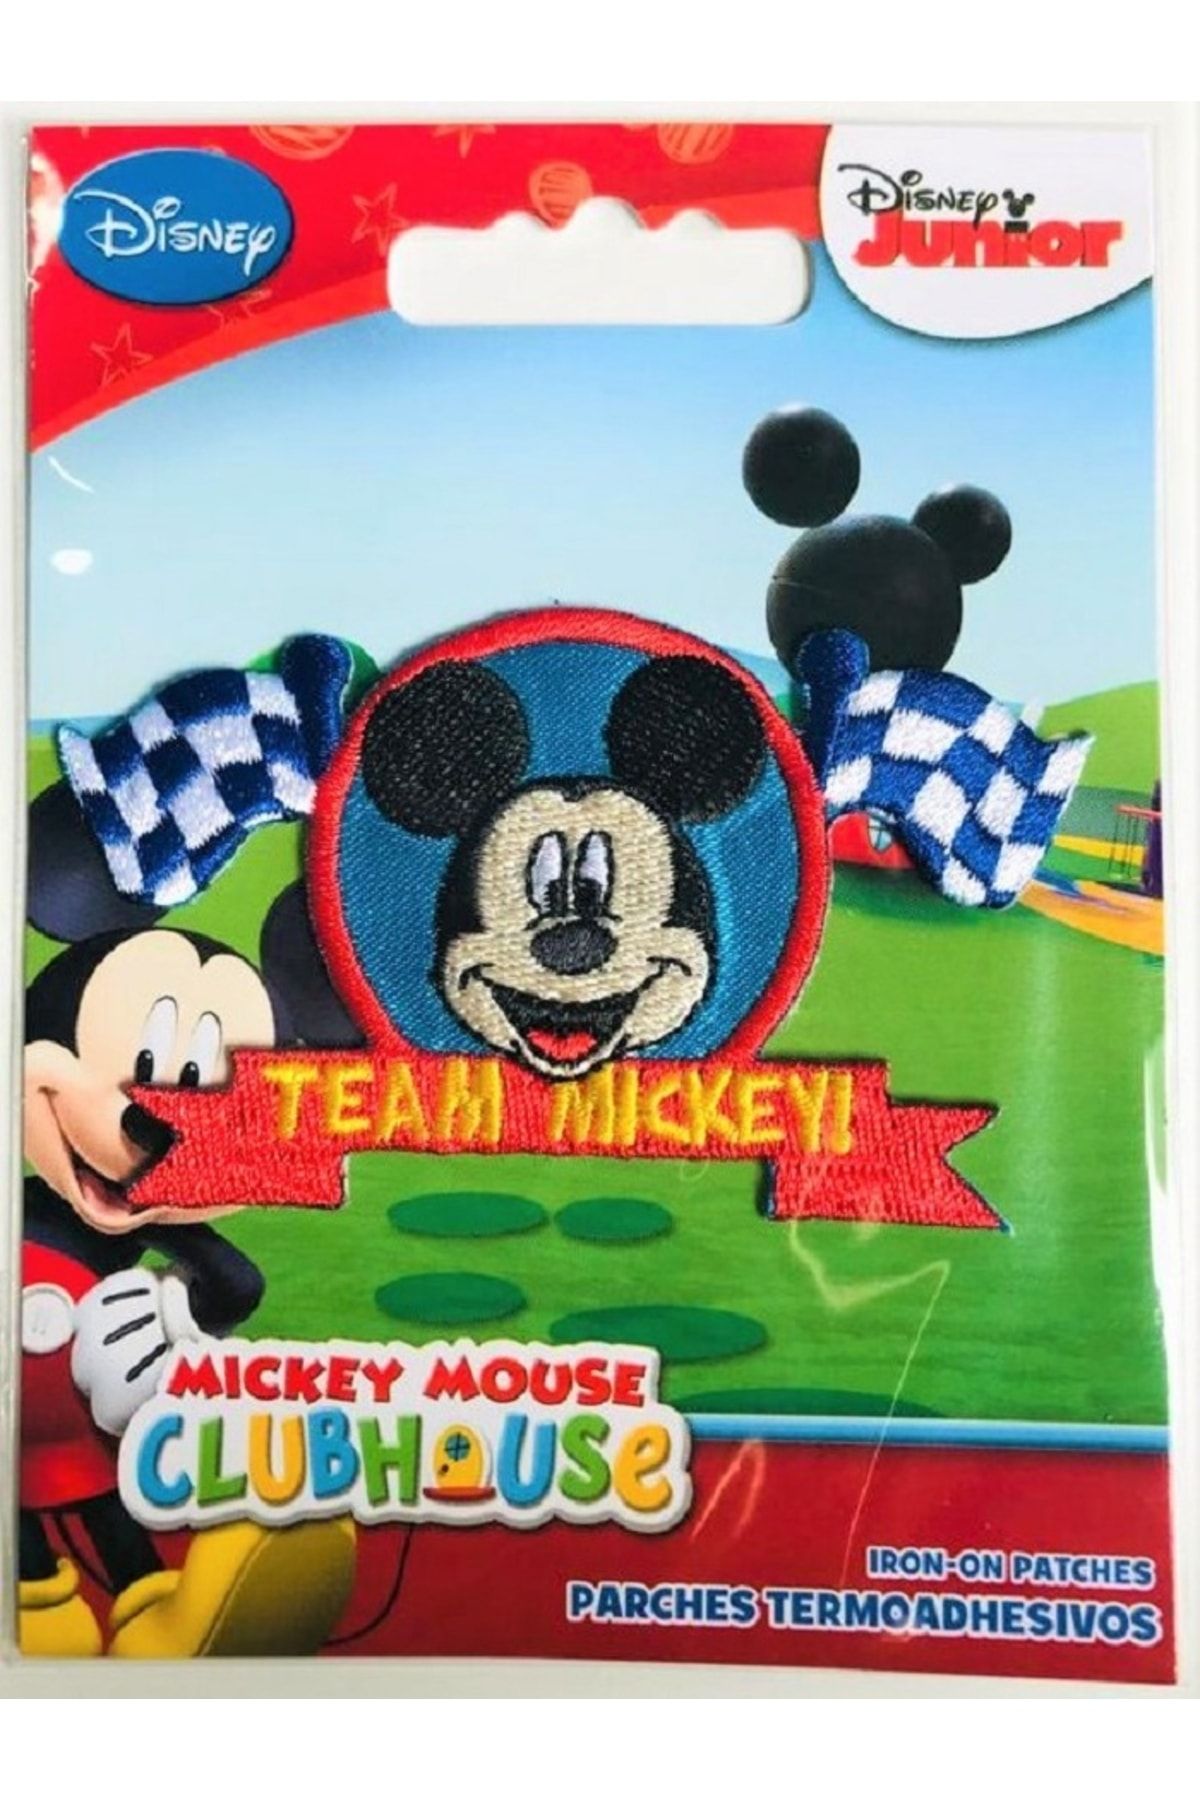 DİSNEY Ütü Ile Yapışan Dokuma Arma - Patch - Yama Miki Mouse Karakteri 3 (orjinal Lisanslı Ürün)